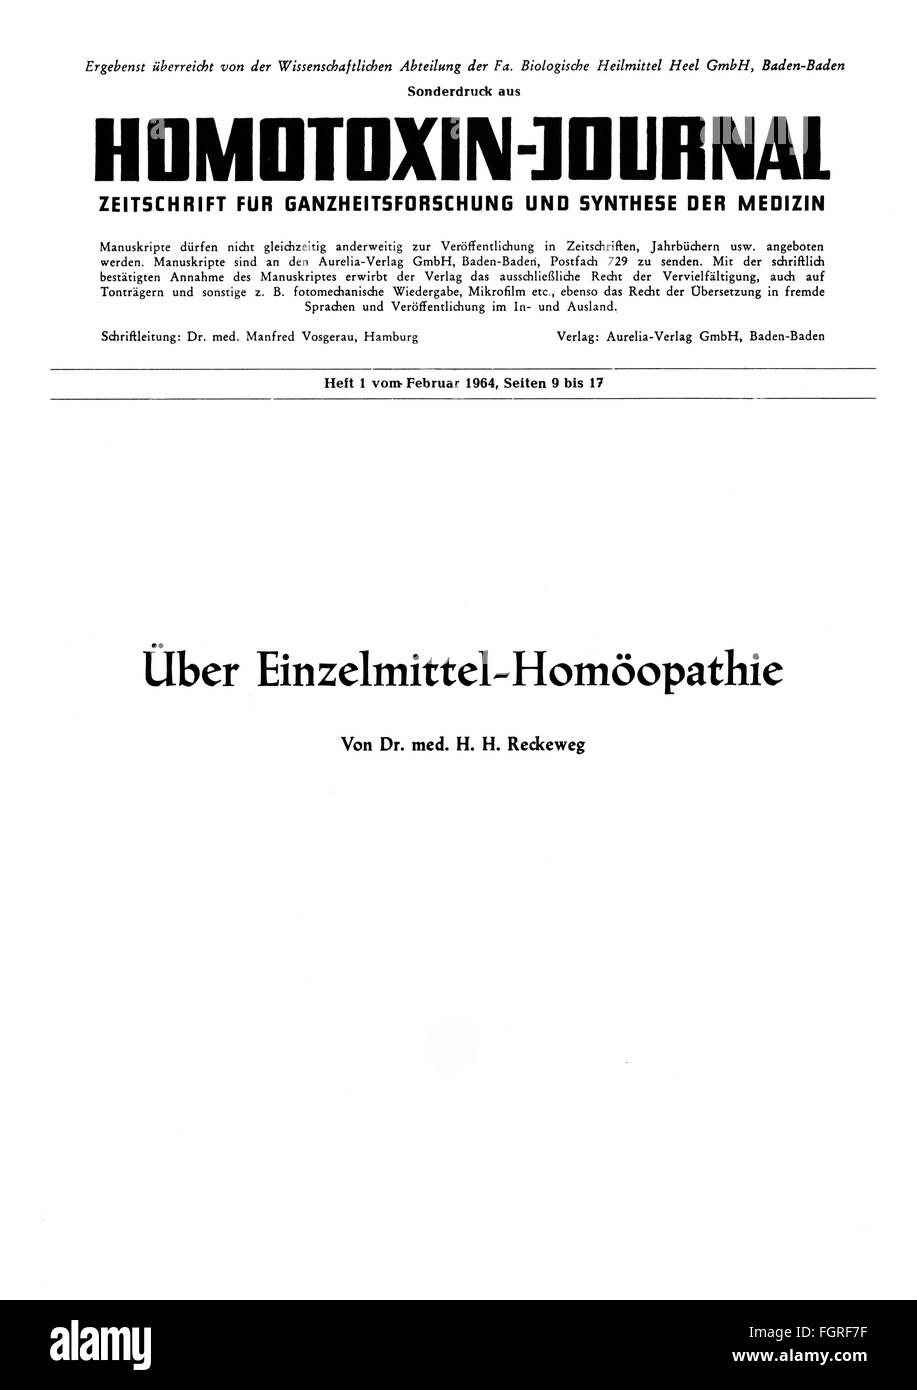 Stampa / media, riviste, 'Homotossin-Journal', edizione speciale fuori numero 1, title page, Baden-Baden, febbraio 1964, diritti aggiuntivi-clearences-non disponibile Foto Stock